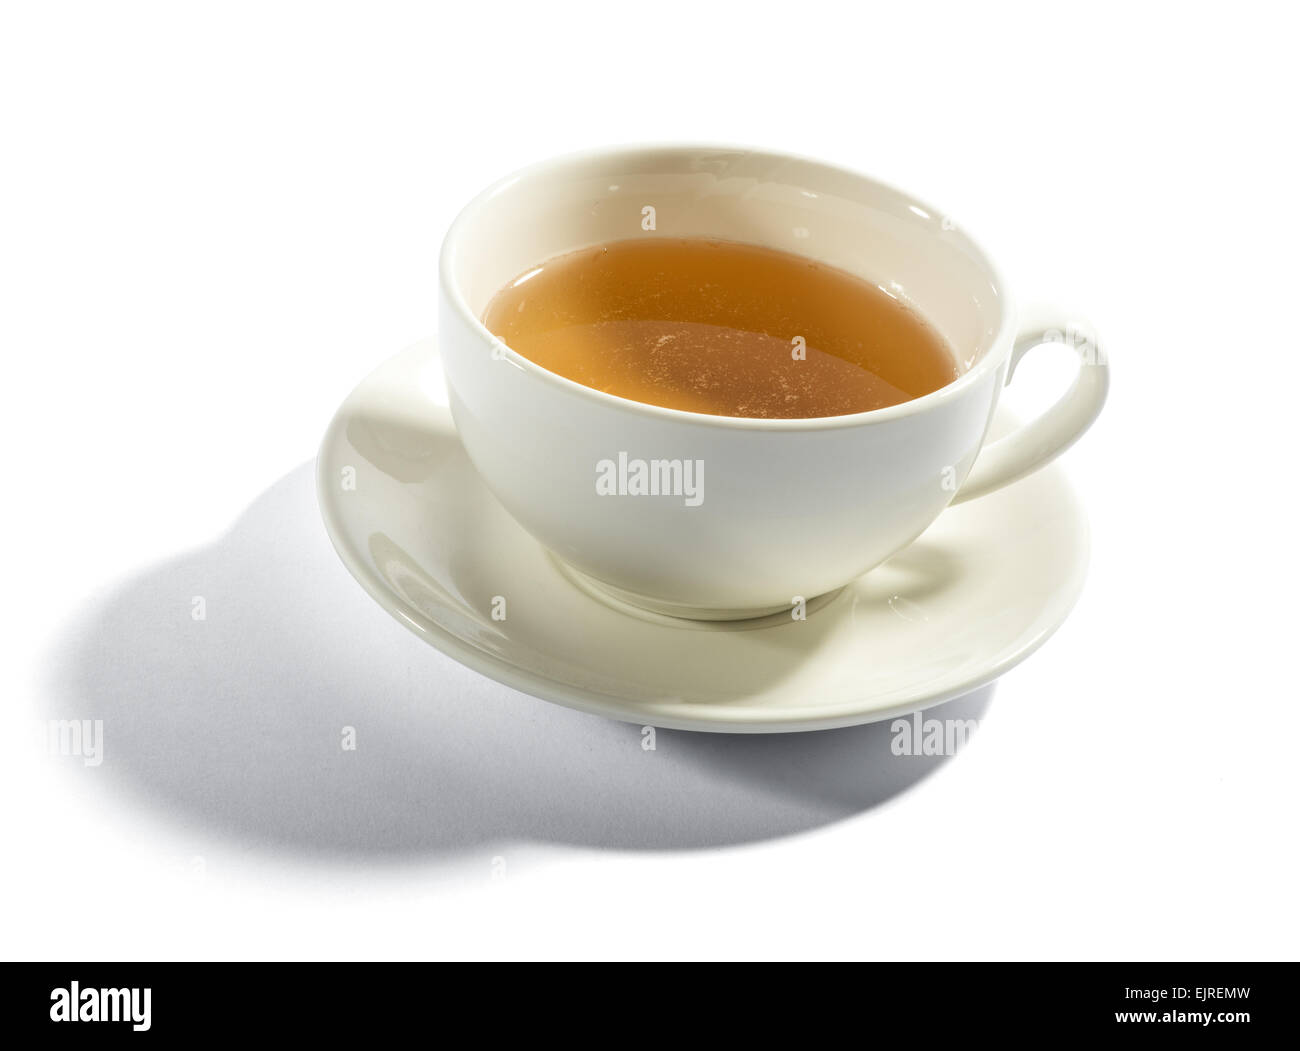 Tasse Tee in einem weißem Porzellan Teetasse, erhöhte Ansicht des Getränks auf einem weißen Hintergrund Stockfoto